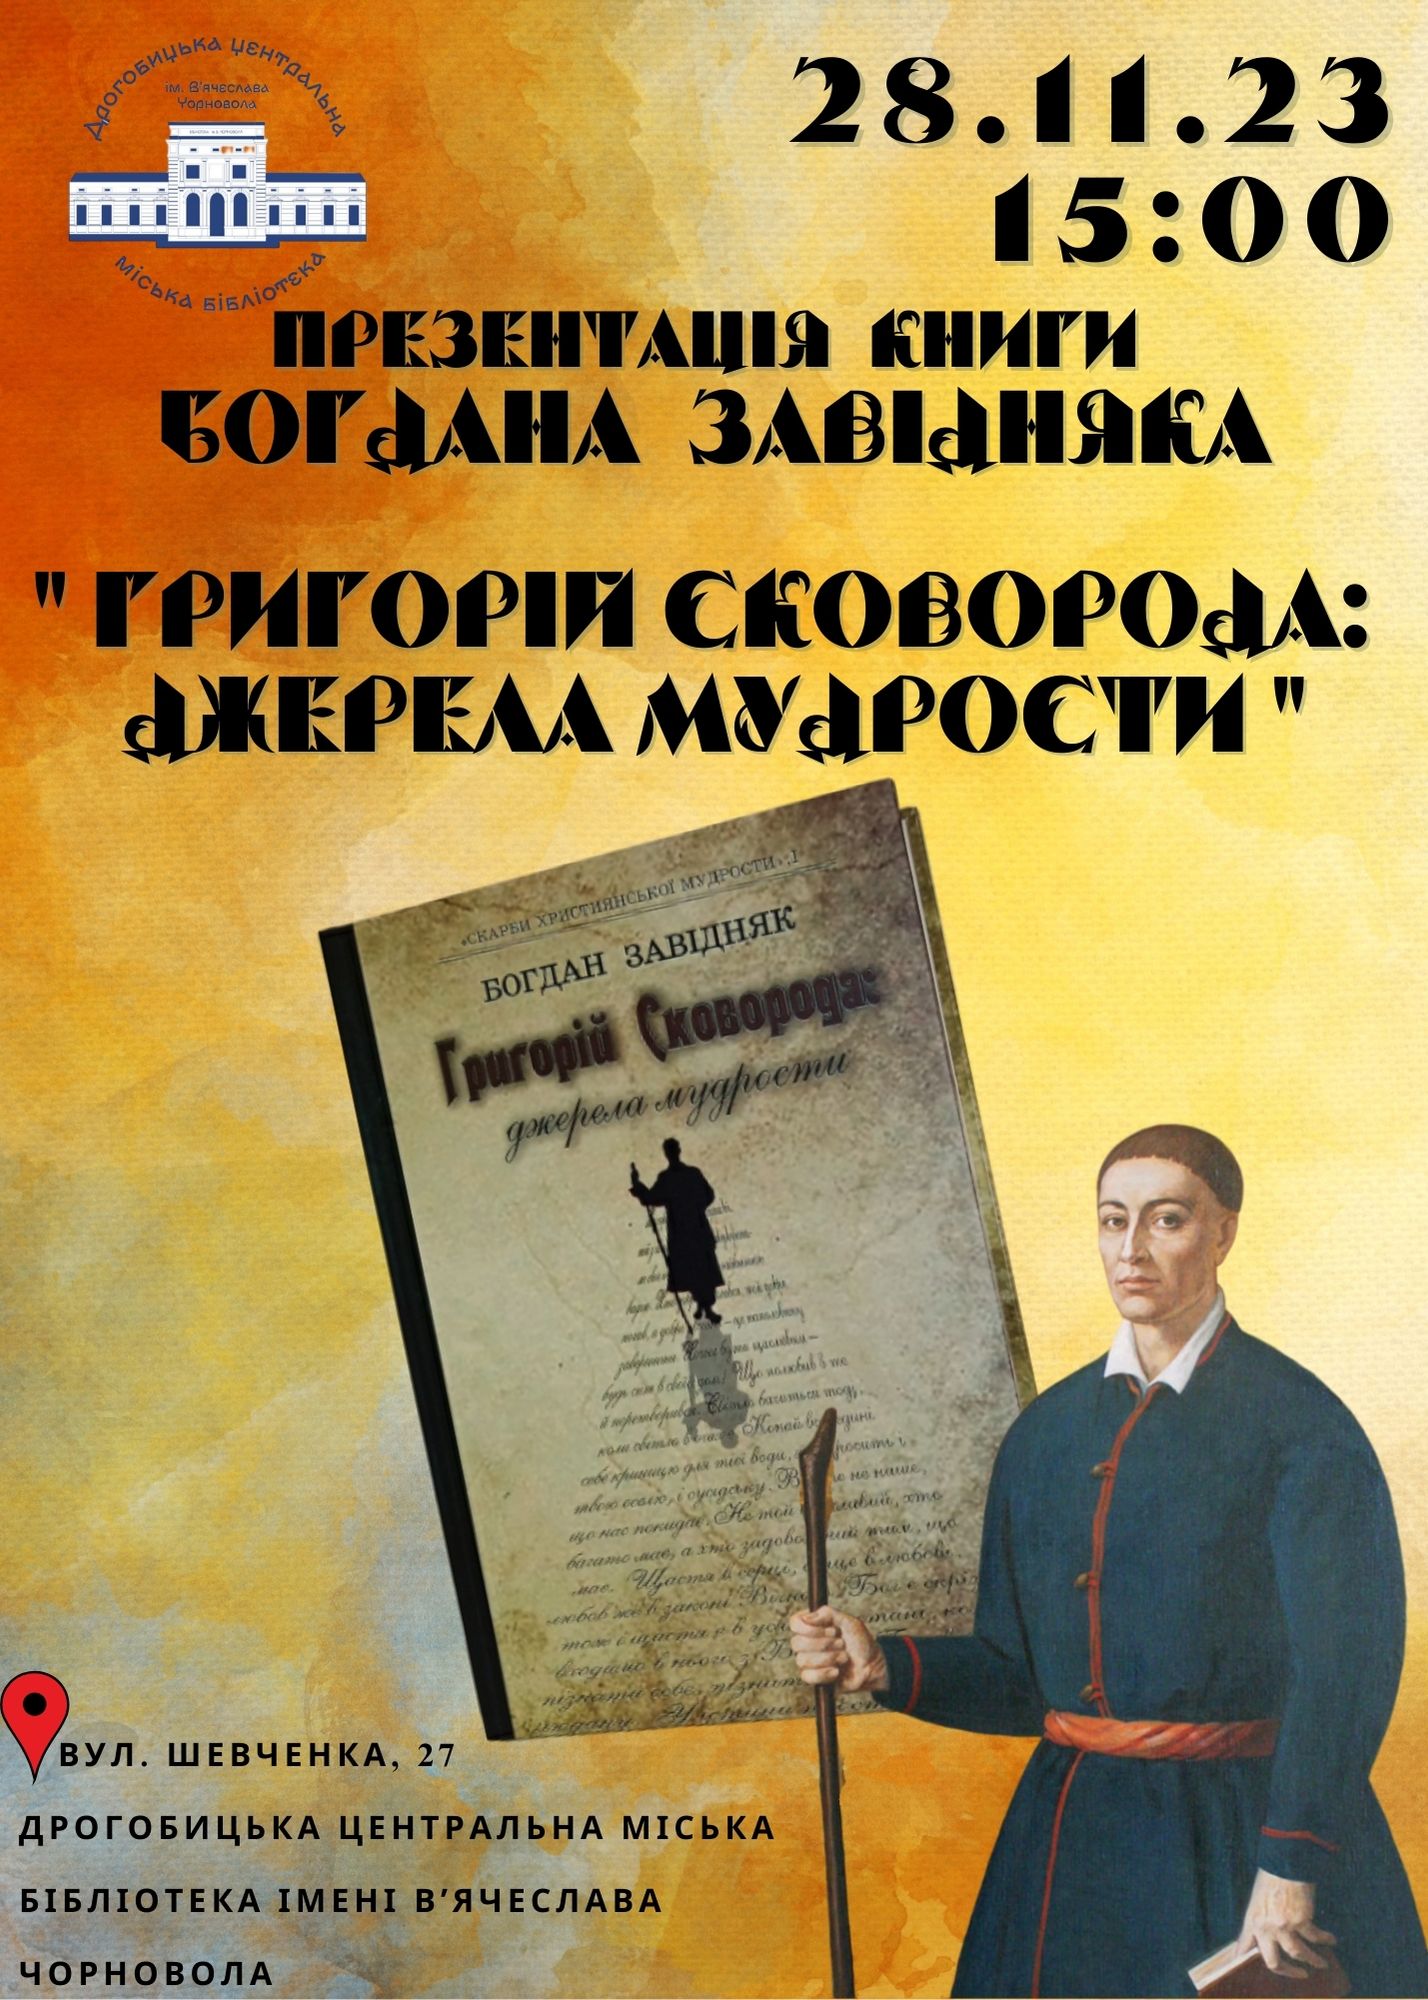 «Григорій Сковорода: джерела мудрости» – у Дрогобицькій центральній бібліотеці відбудеться презентація книги про мандрівного філософа